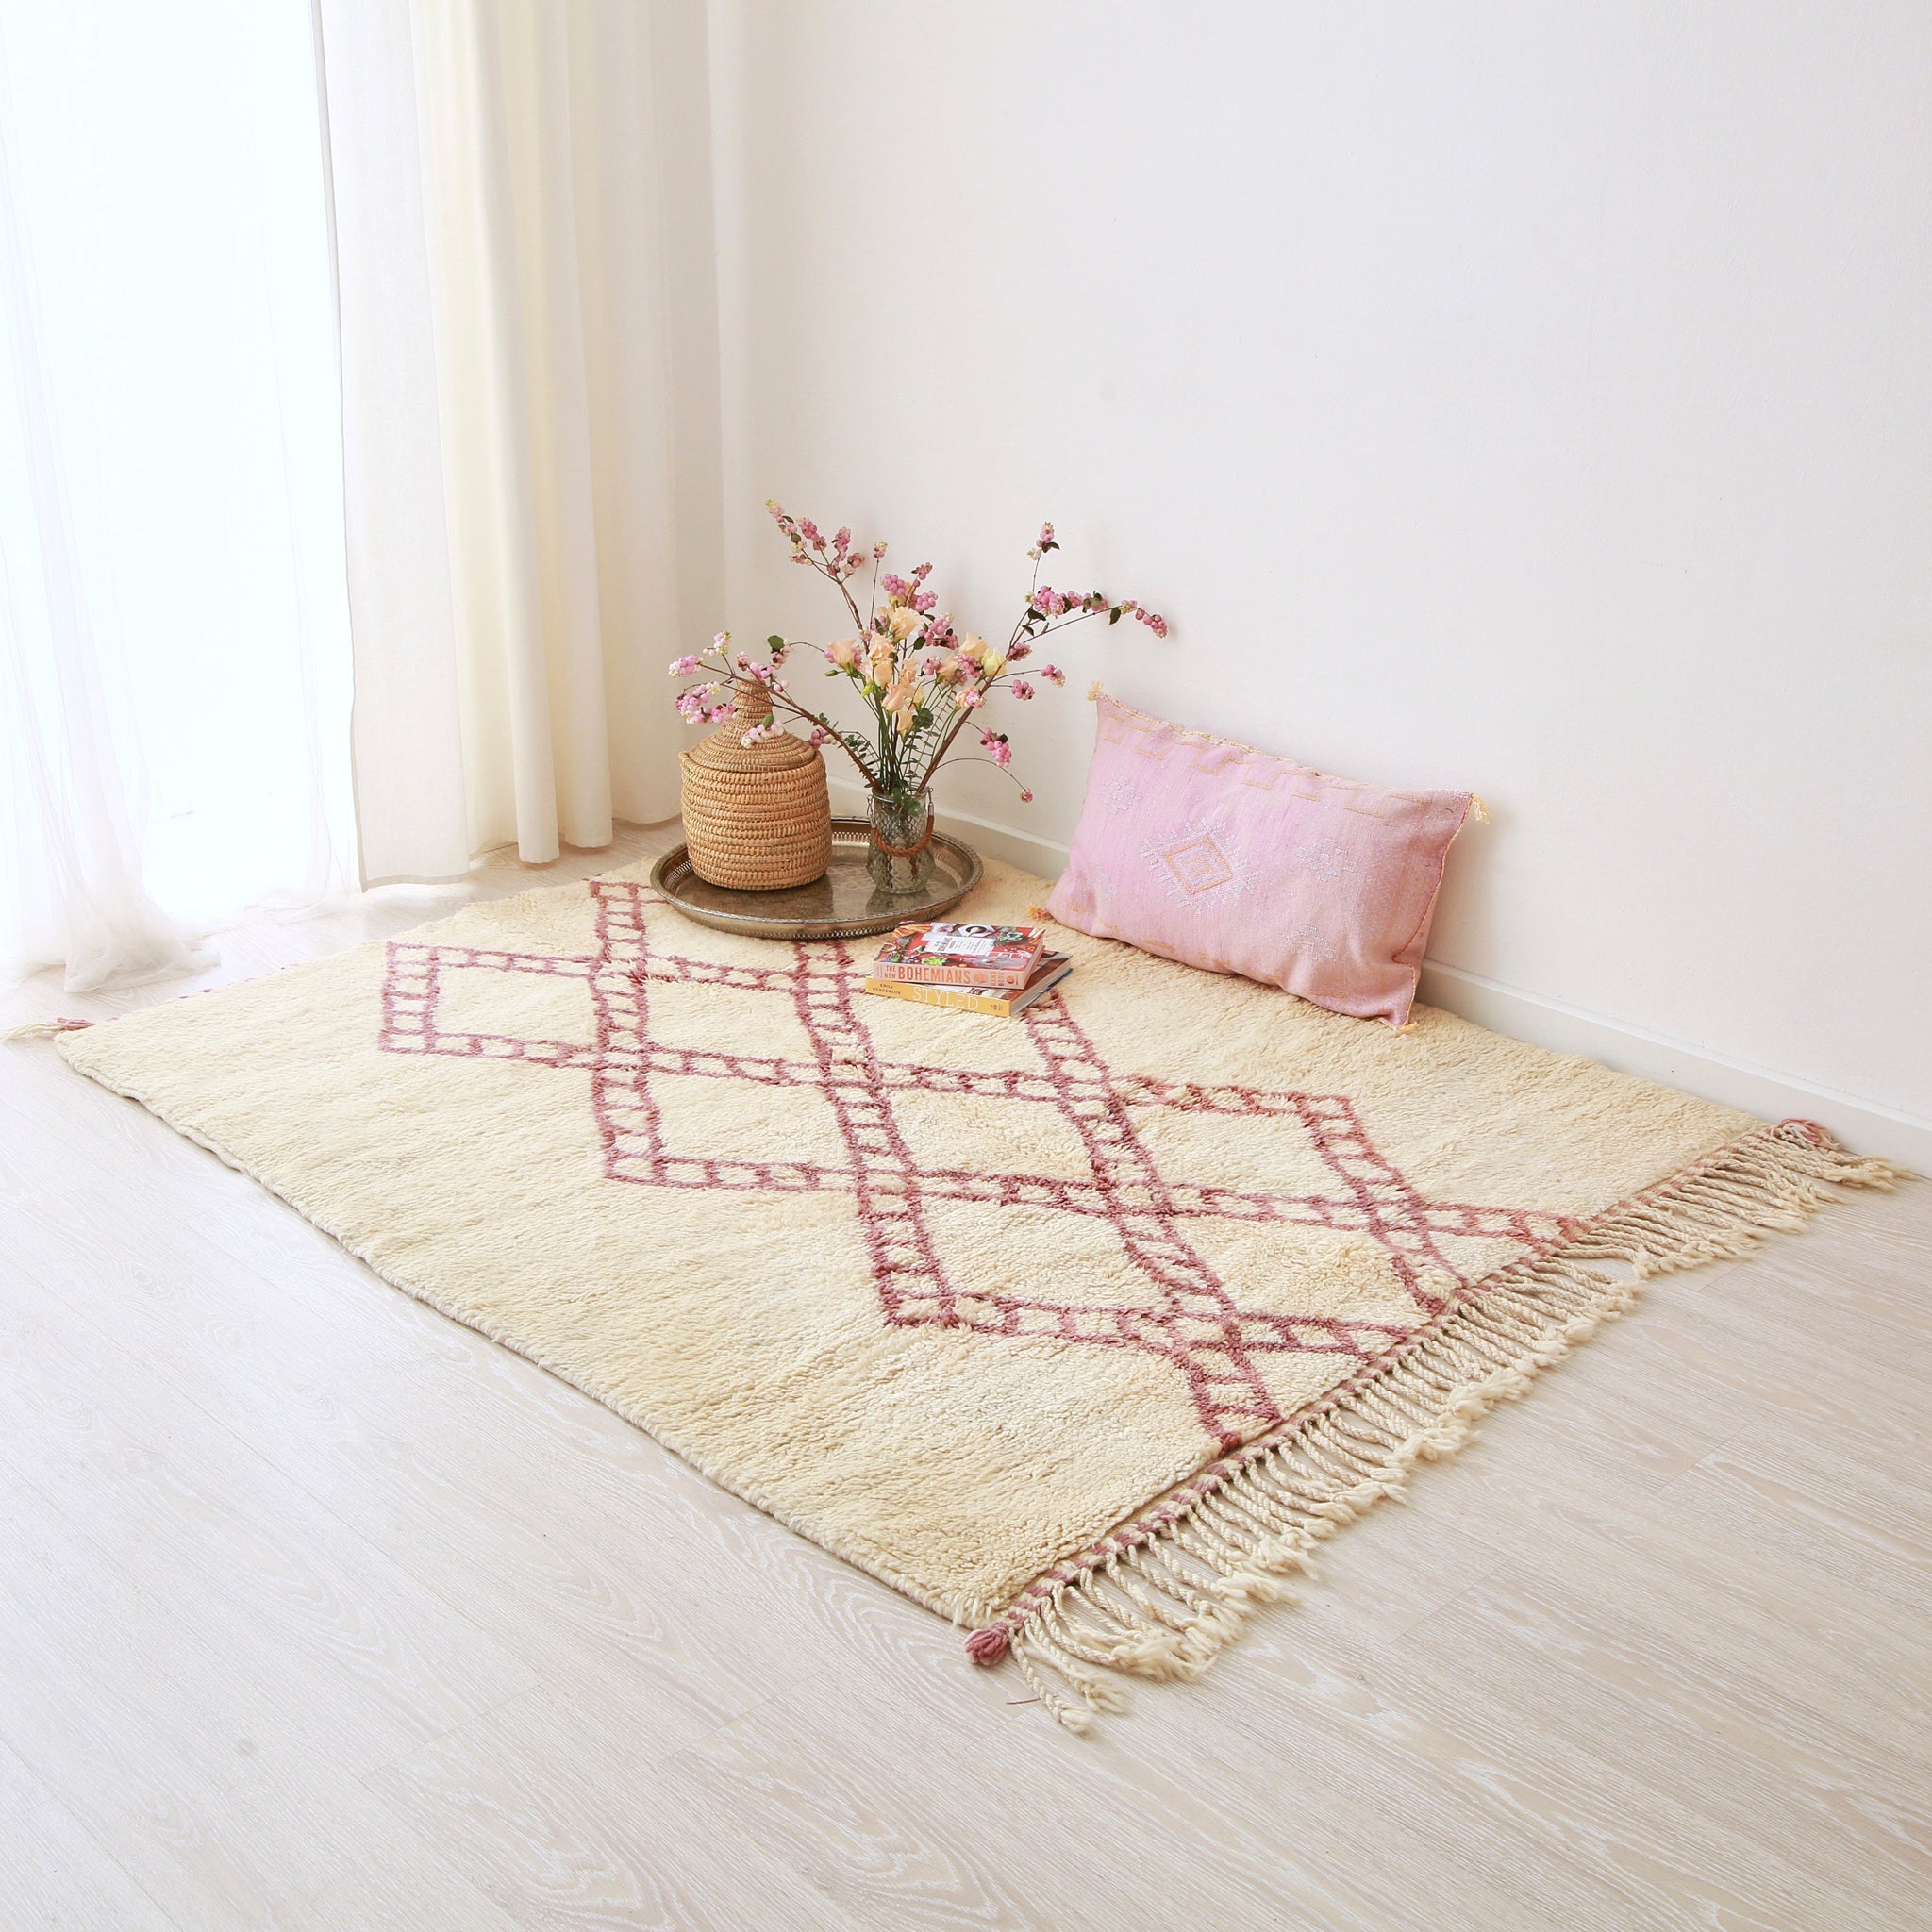 tappeto beni mrirt bianco con rombi lilla che creano quattro catene  che si intracciano disteso sul pavimento. Un lungo tappeto in sabra rosa e una composizione floreale sono appoggiati sul tappeto